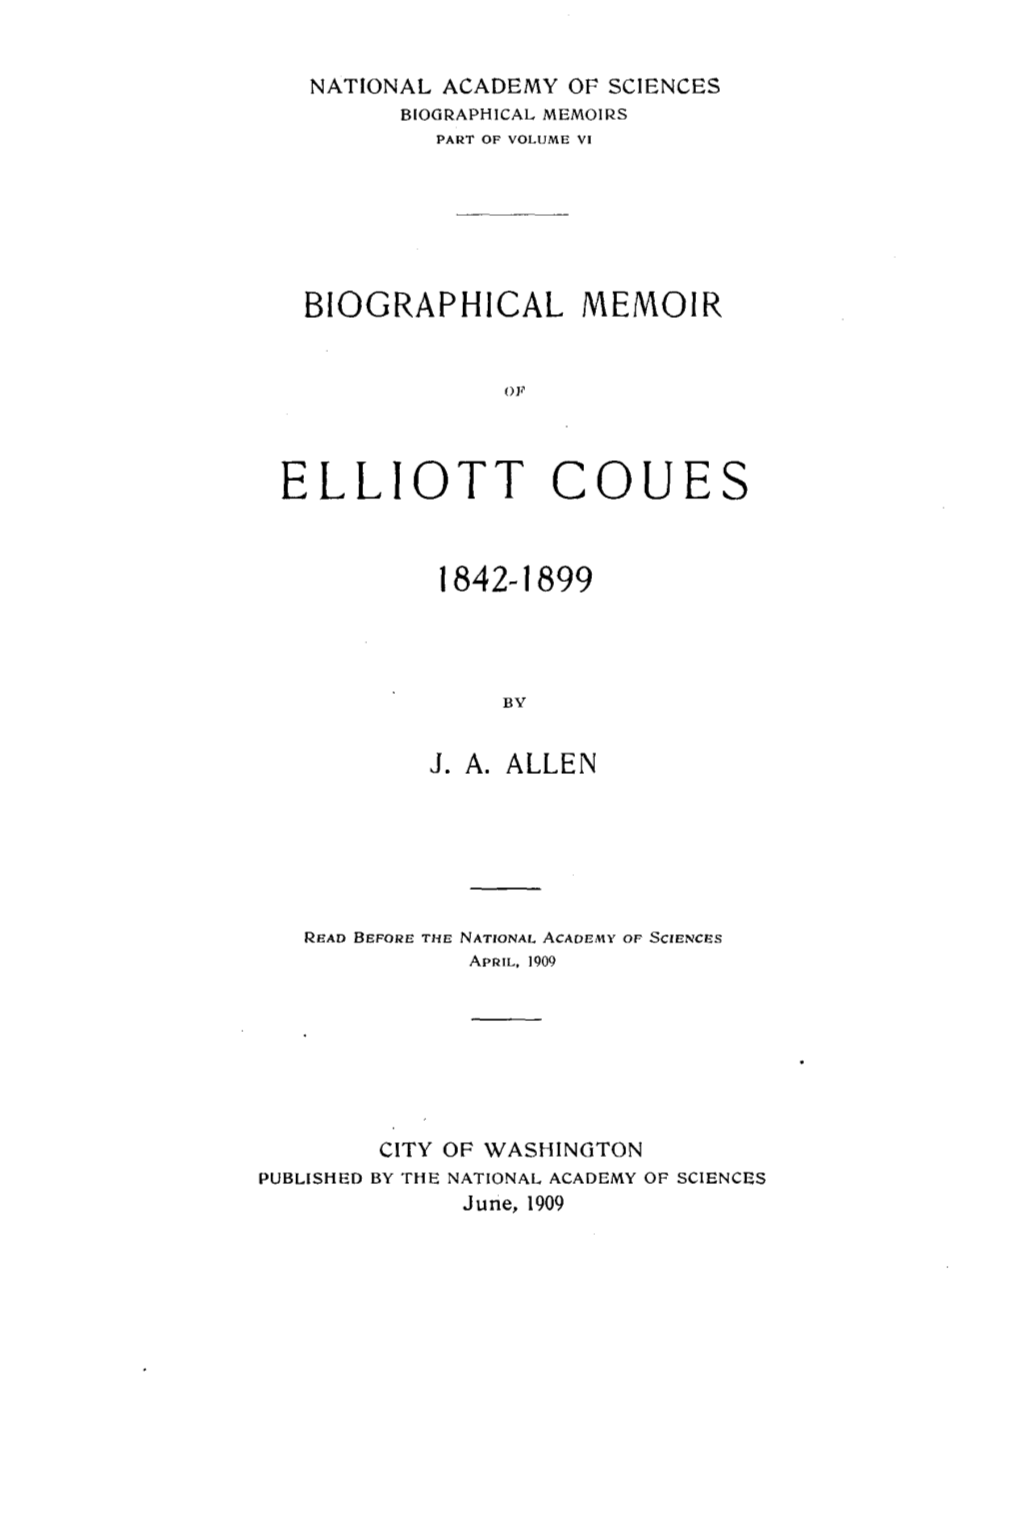 Elliott Coues